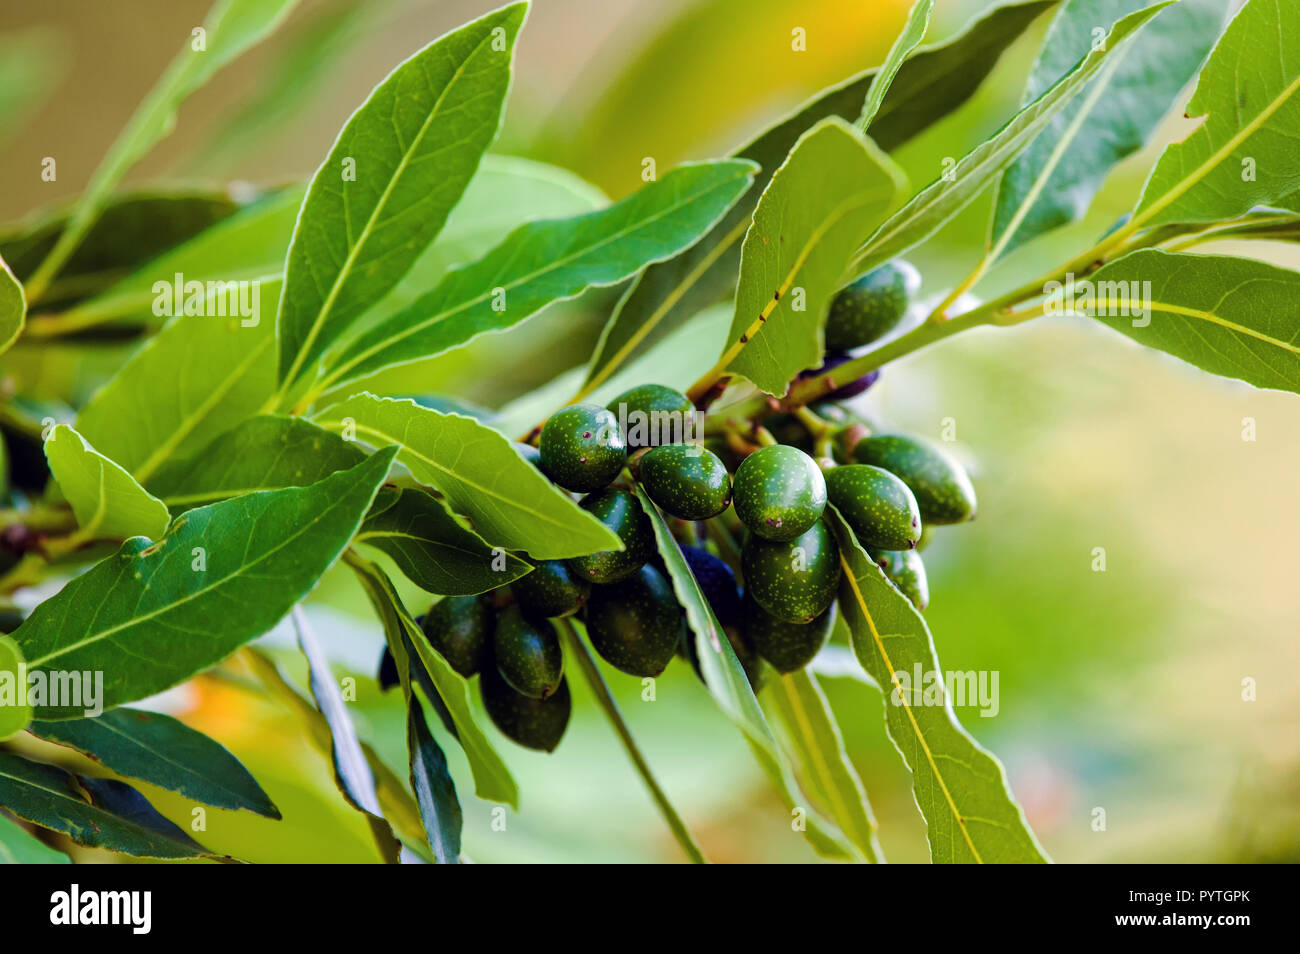 Fruits and foliage of Bay laurel (Laurus nobilis). Stock Photo